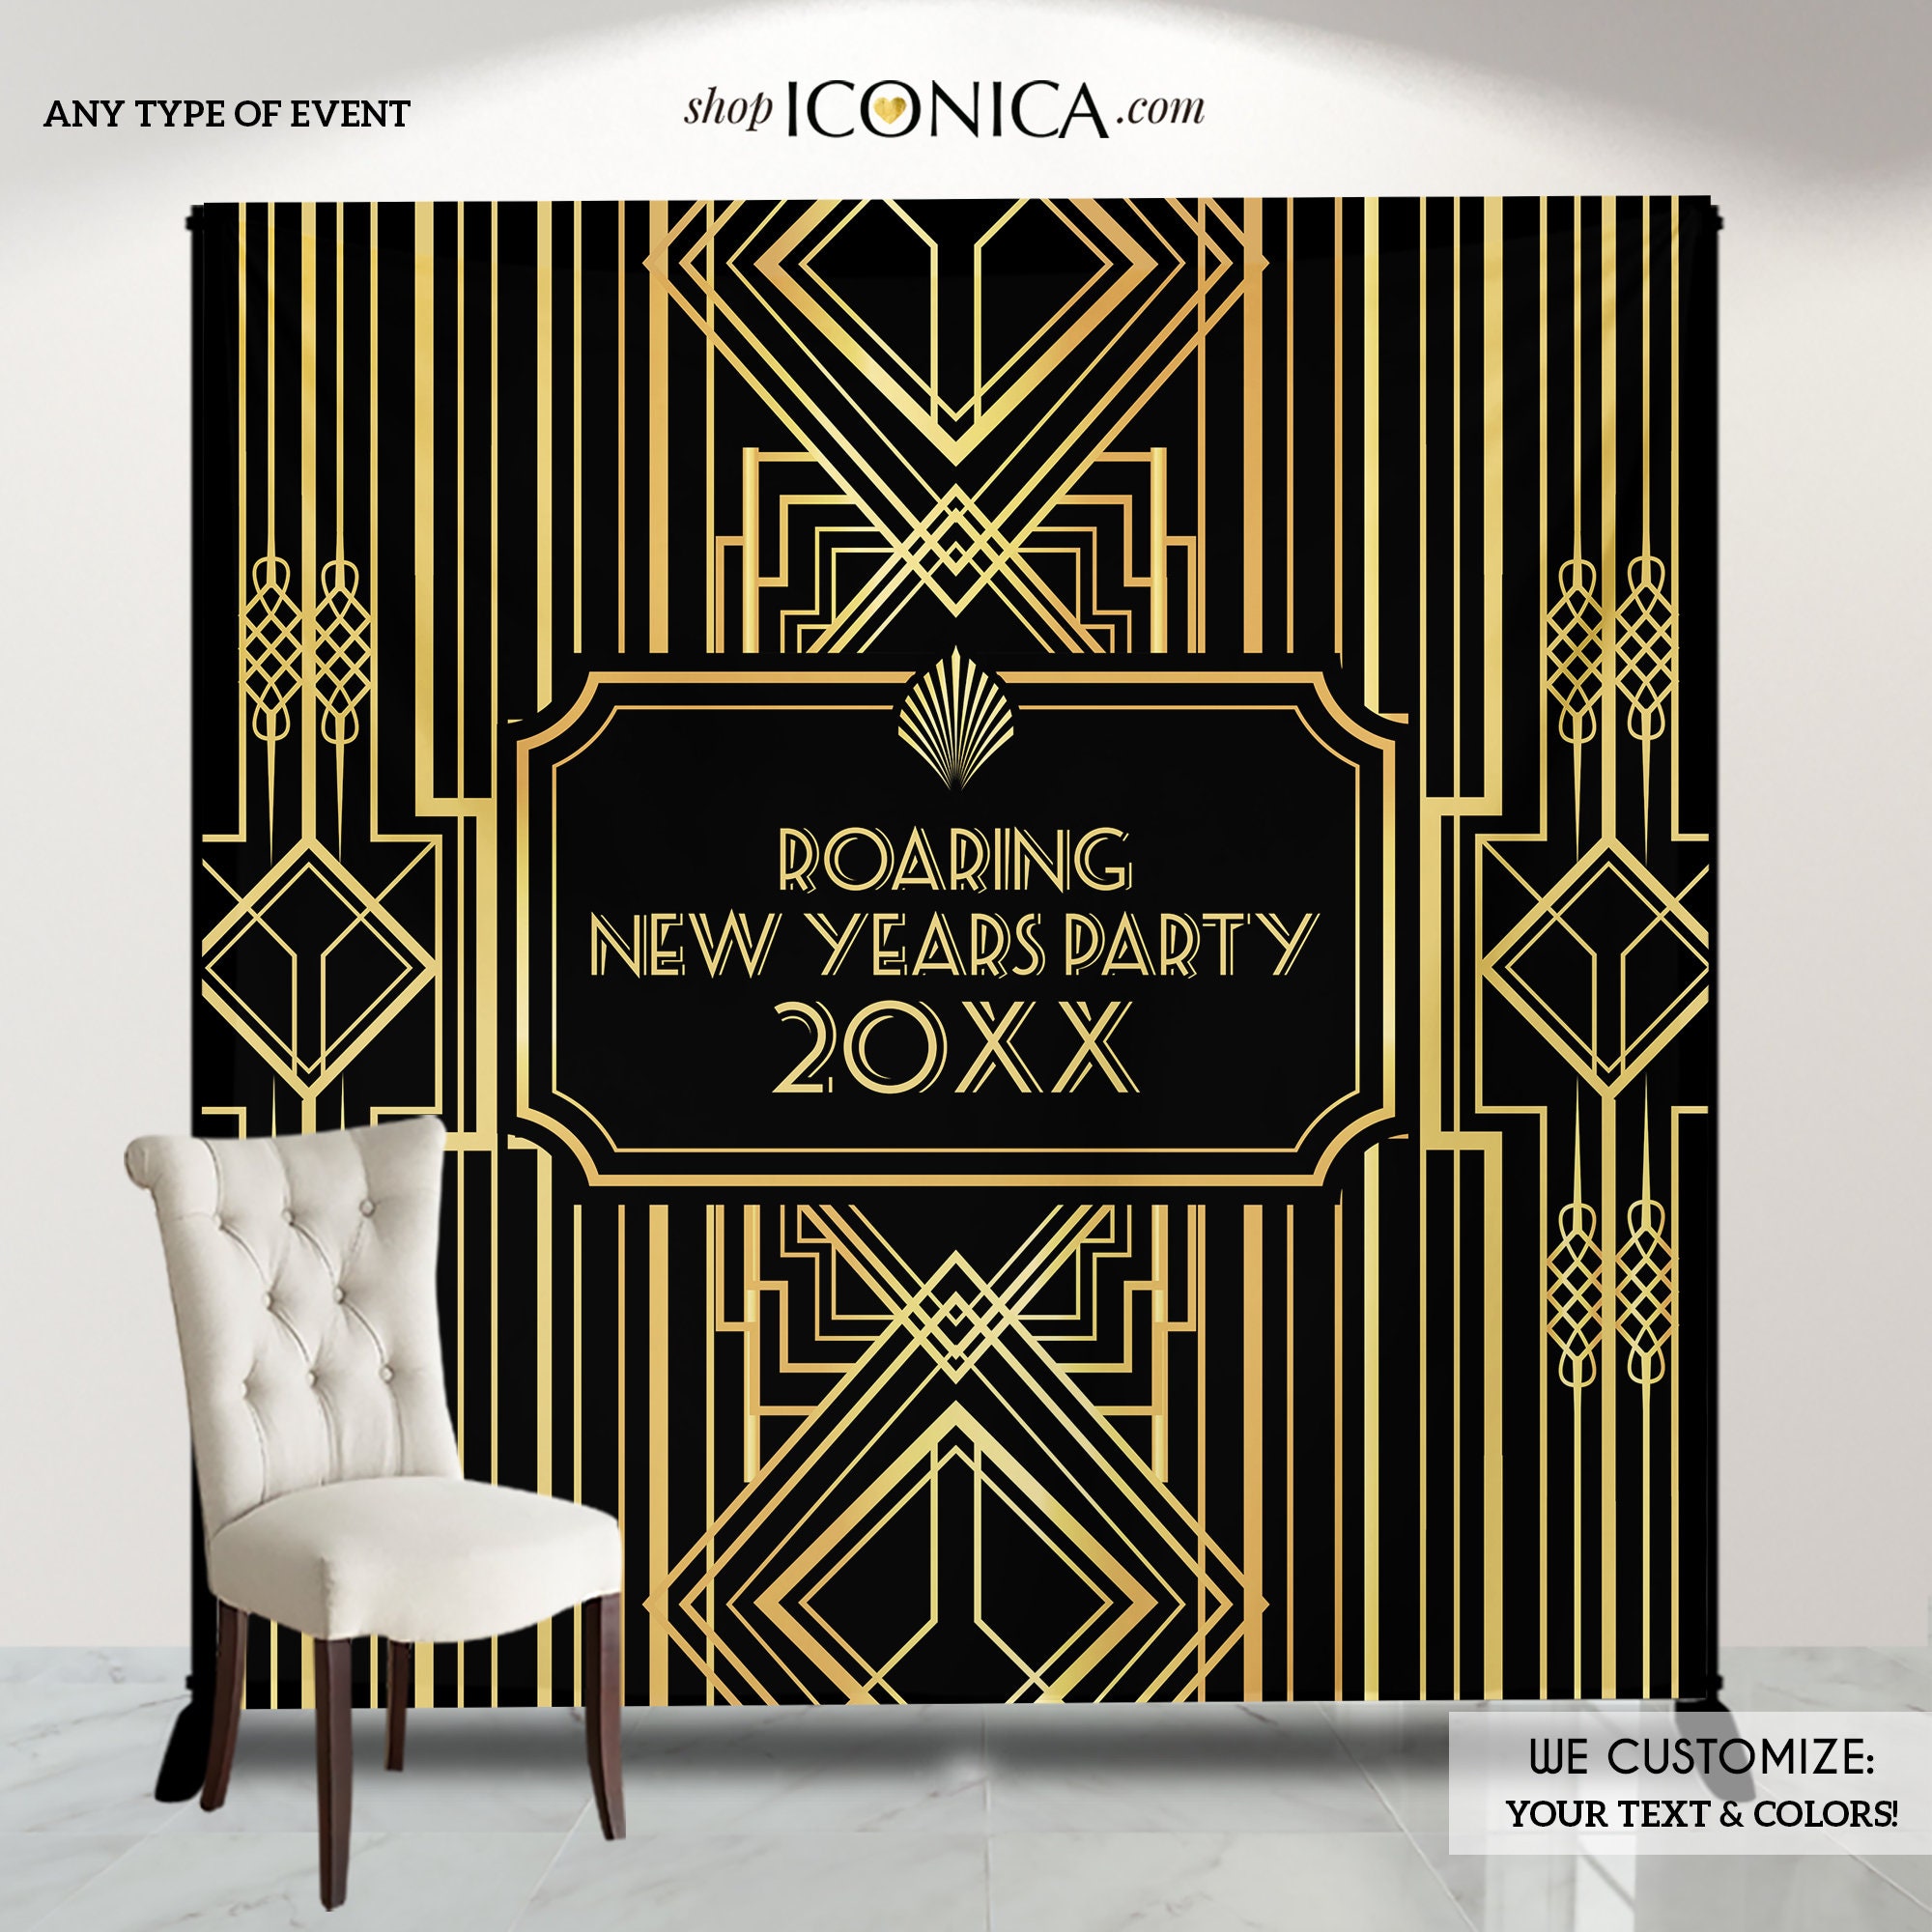 Great Gatsby Theme - Gold party decoration - Fiesta decoración dorada